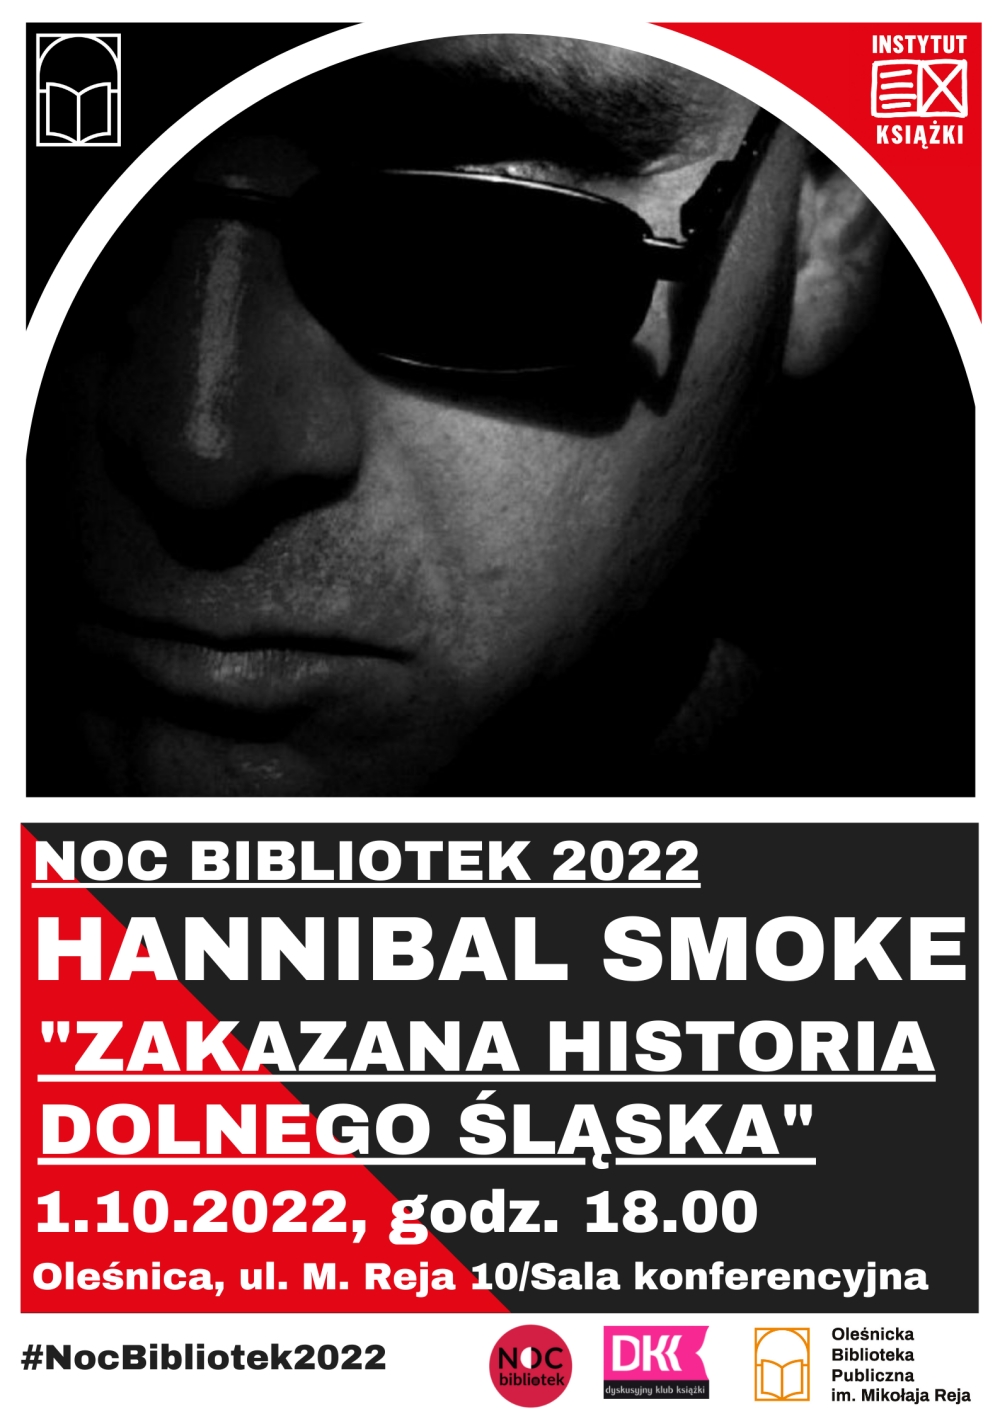 Plakat promujący spotkanie z Hannibalem Smoke